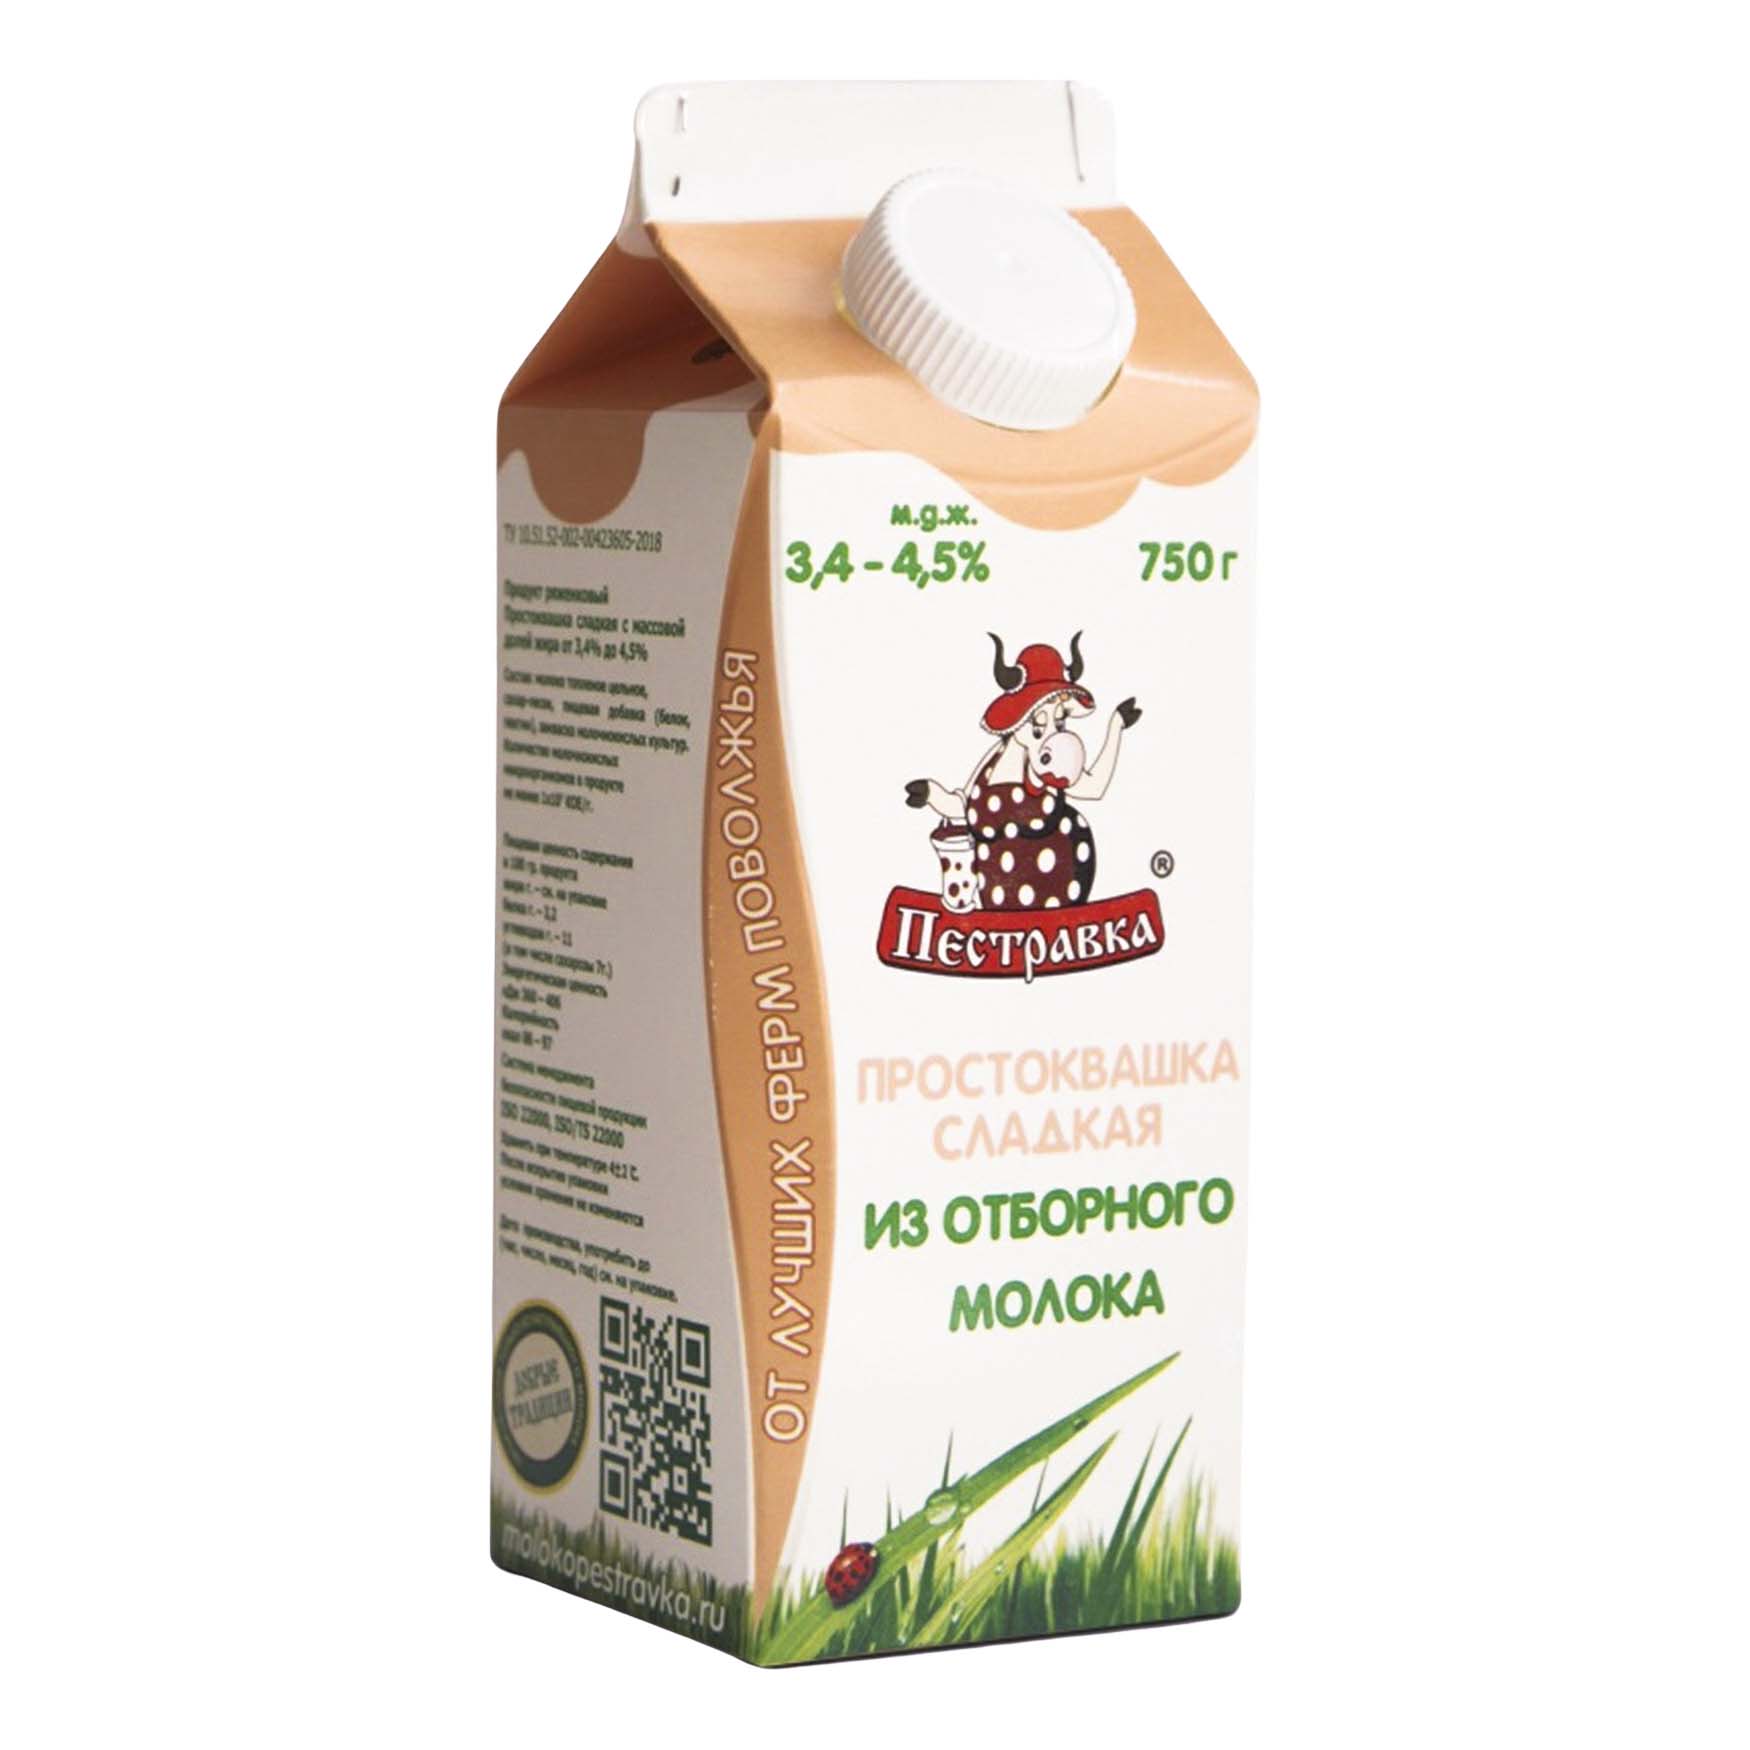 фото Простокваша пестравка сладкая из отборного молока 3,4-4,5% 750 г бзмж